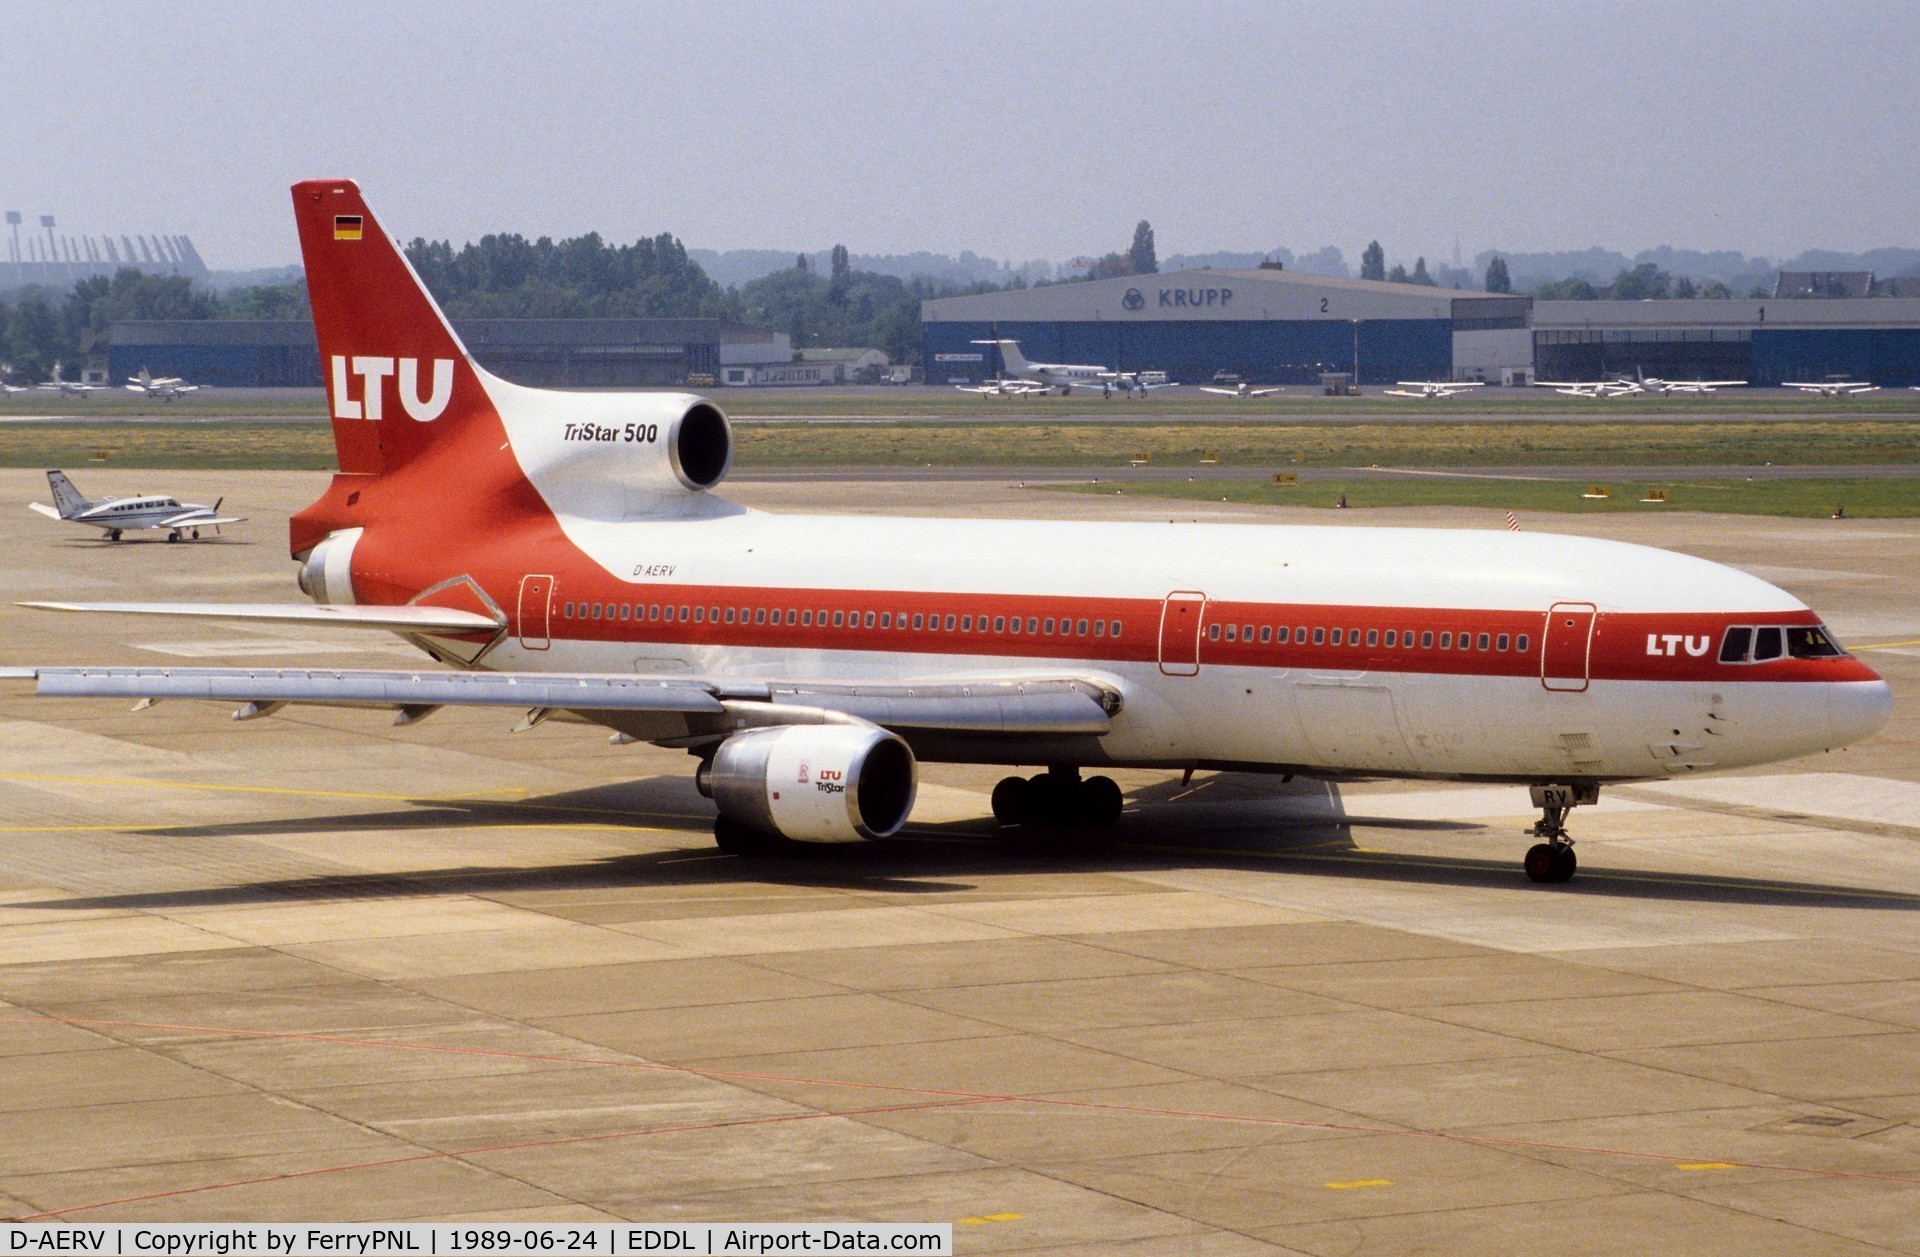 D-AERV, 1981 Lockheed L-1011-385-3 Tristar 500 C/N 193Y-1195, LTU L1015